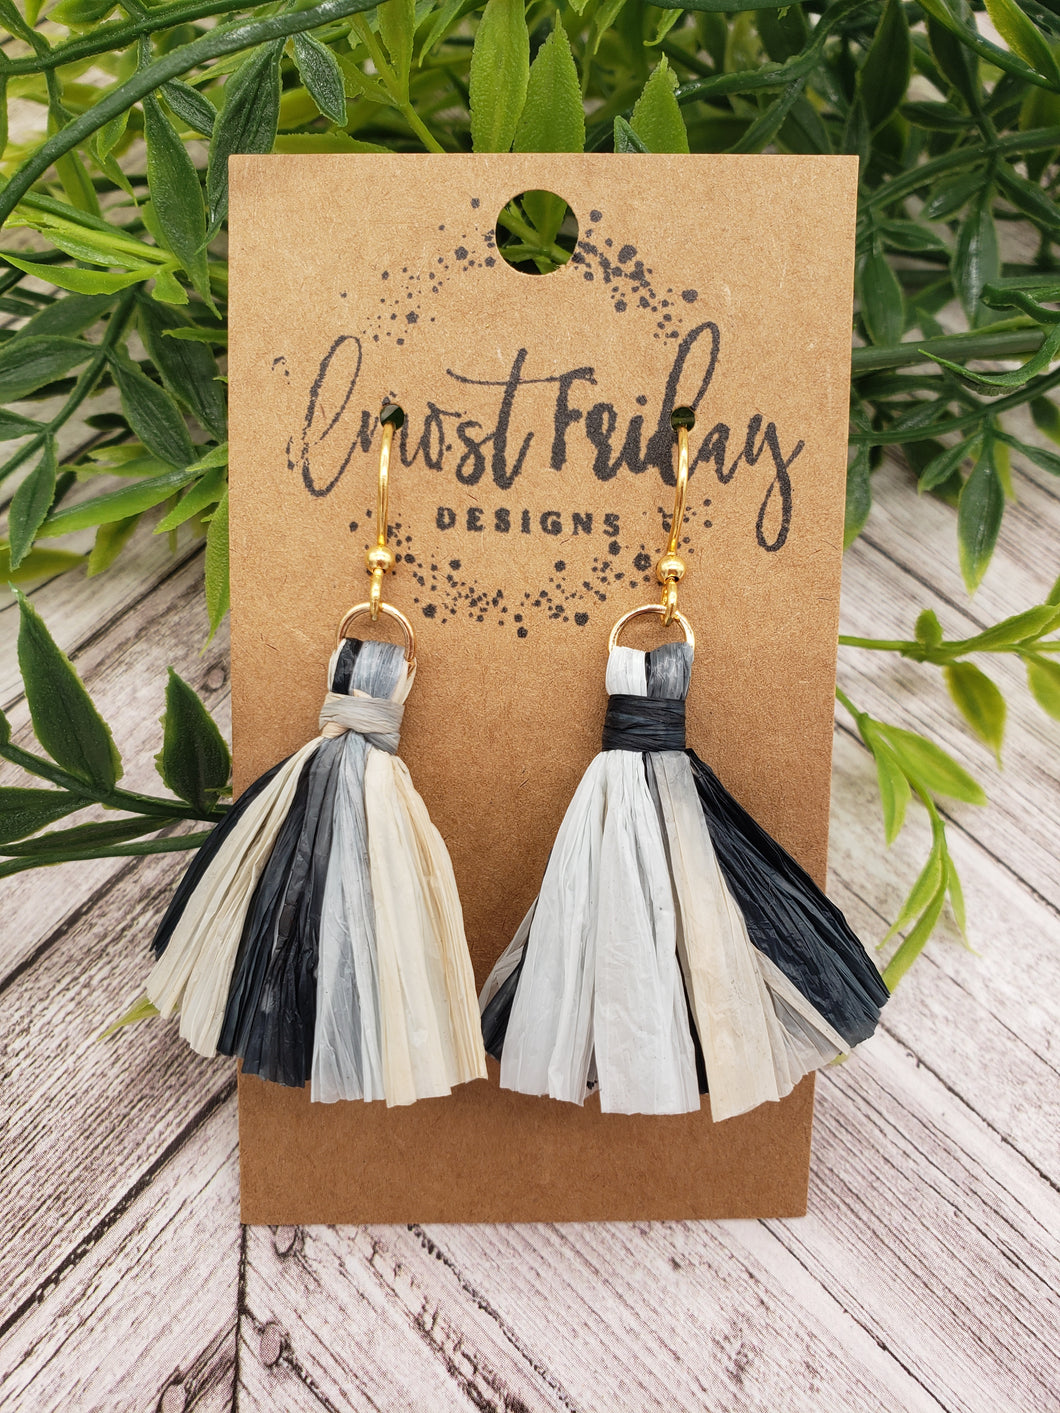 Tassel Earrings - Black and White - Raffia Earrings - Fan Style Design - Tassels